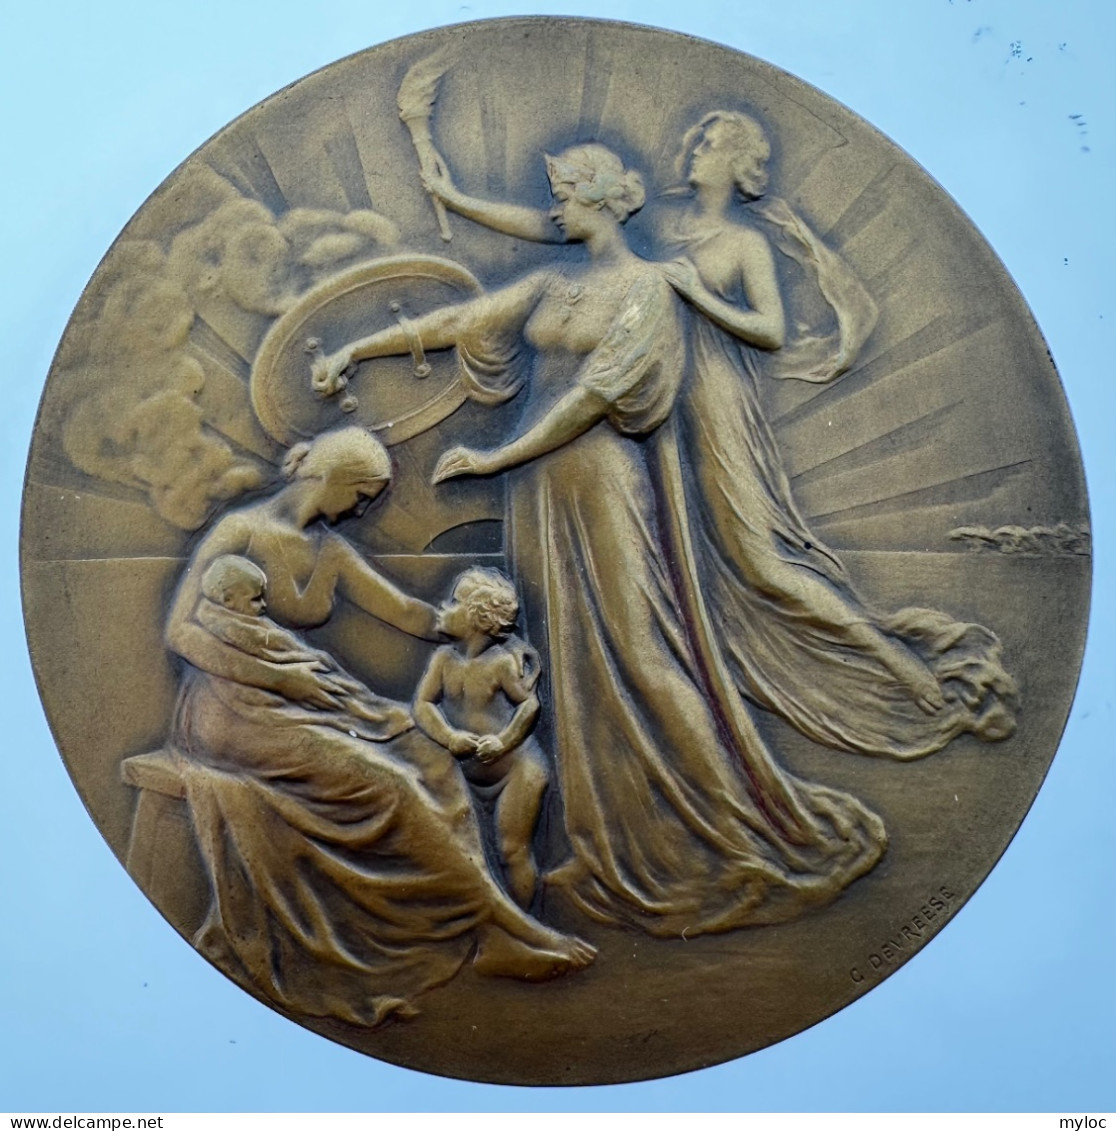 Médaille Bronze. Médaille Frappée à L'occasion Du Centenaire De La Compagnie Des Assurances Générales. A. Devreese - Profesionales / De Sociedad